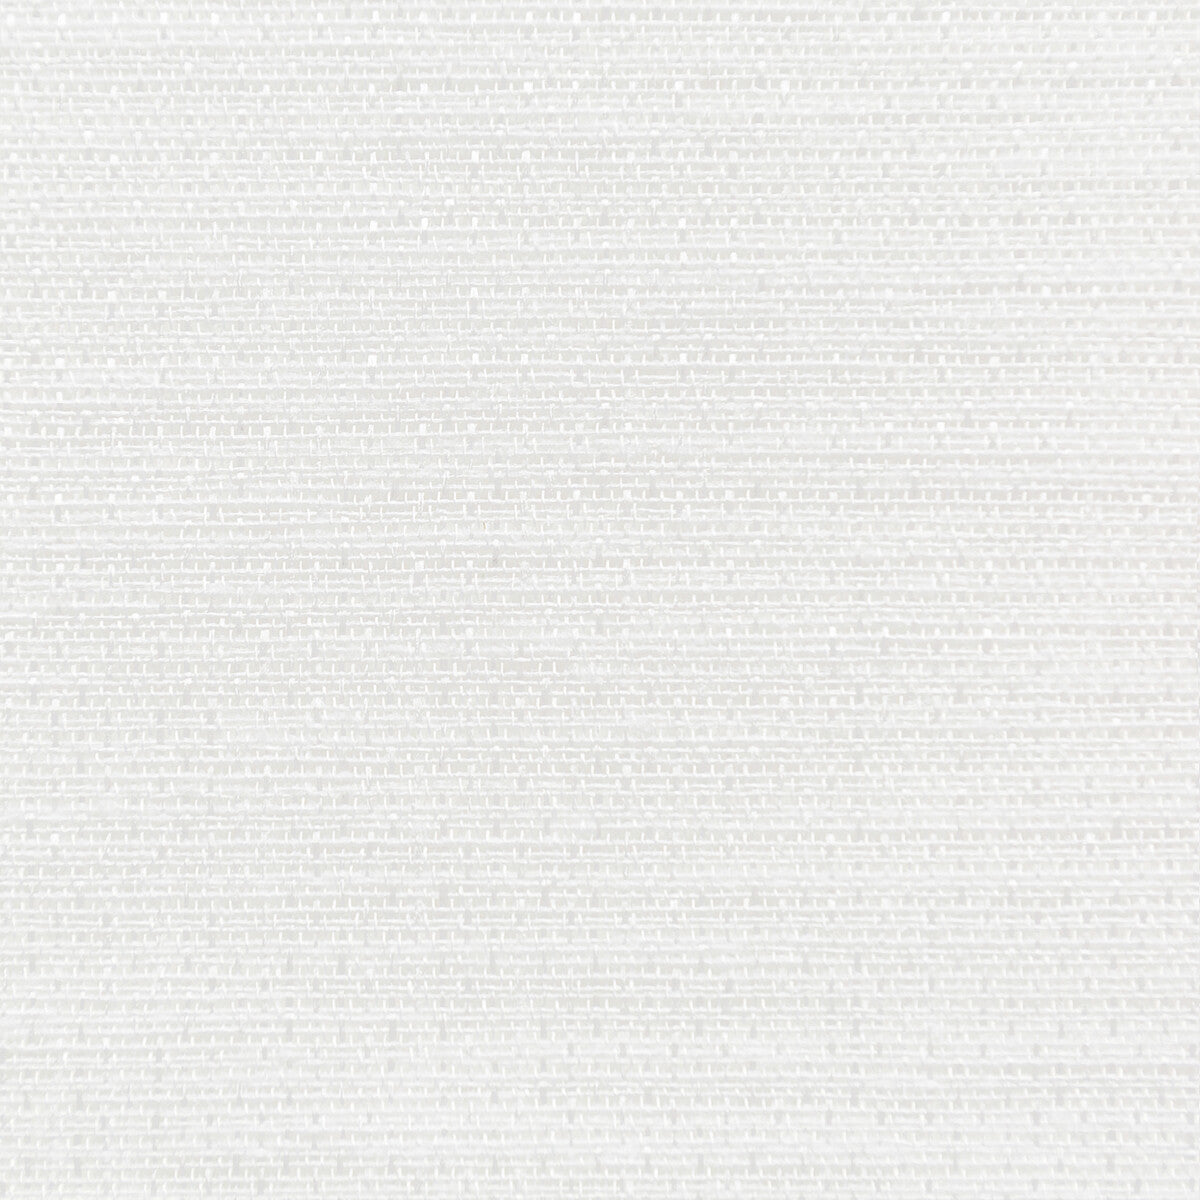 Kravet Basics fabric in 4726-101 color - pattern 4726.101.0 - by Kravet Basics